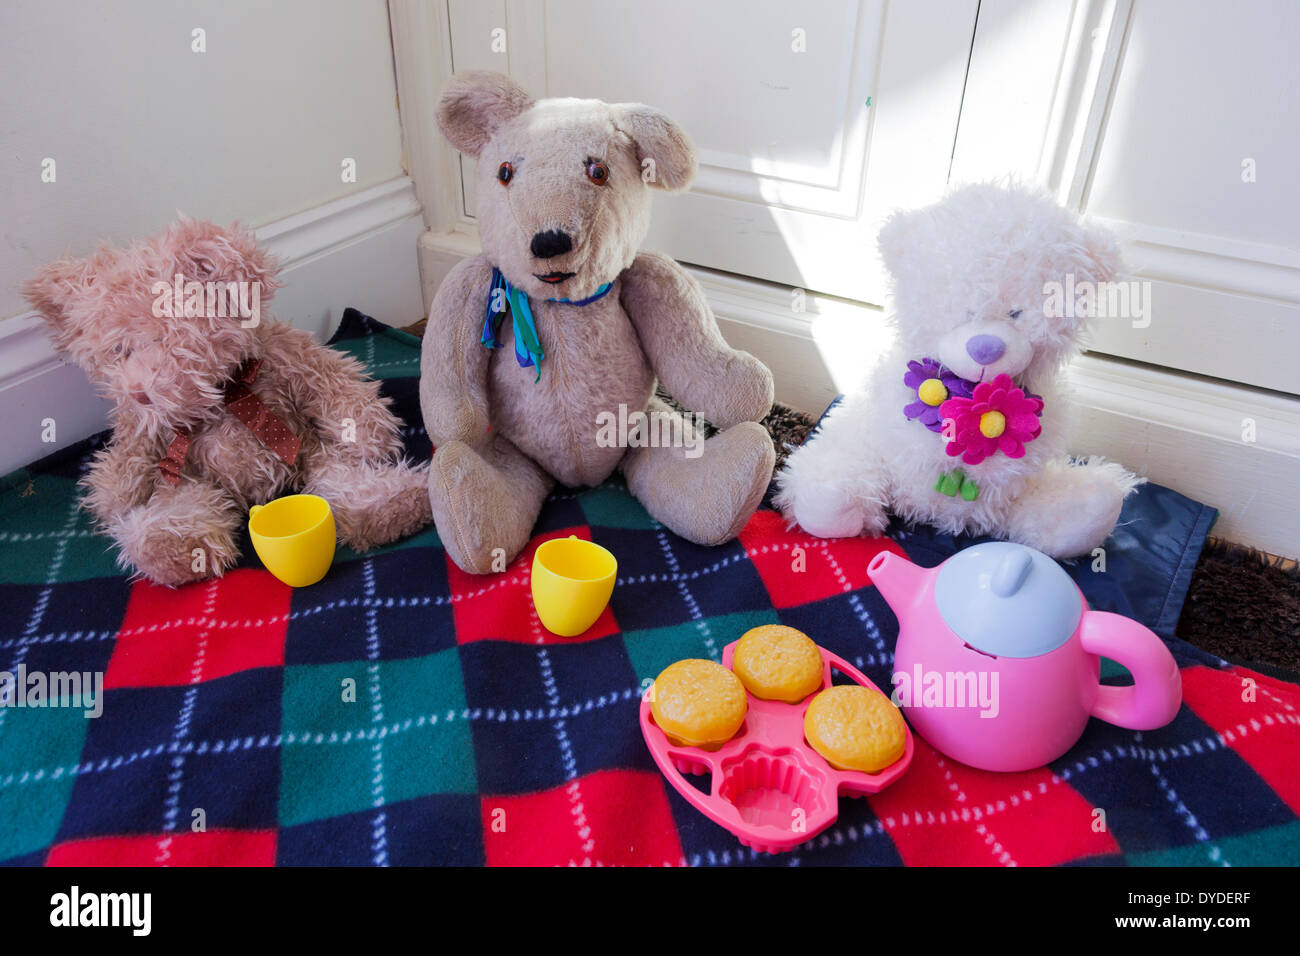 Stofftier für Kinder Teddybären Picknick auf einer Decke gesetzt. Stockfoto